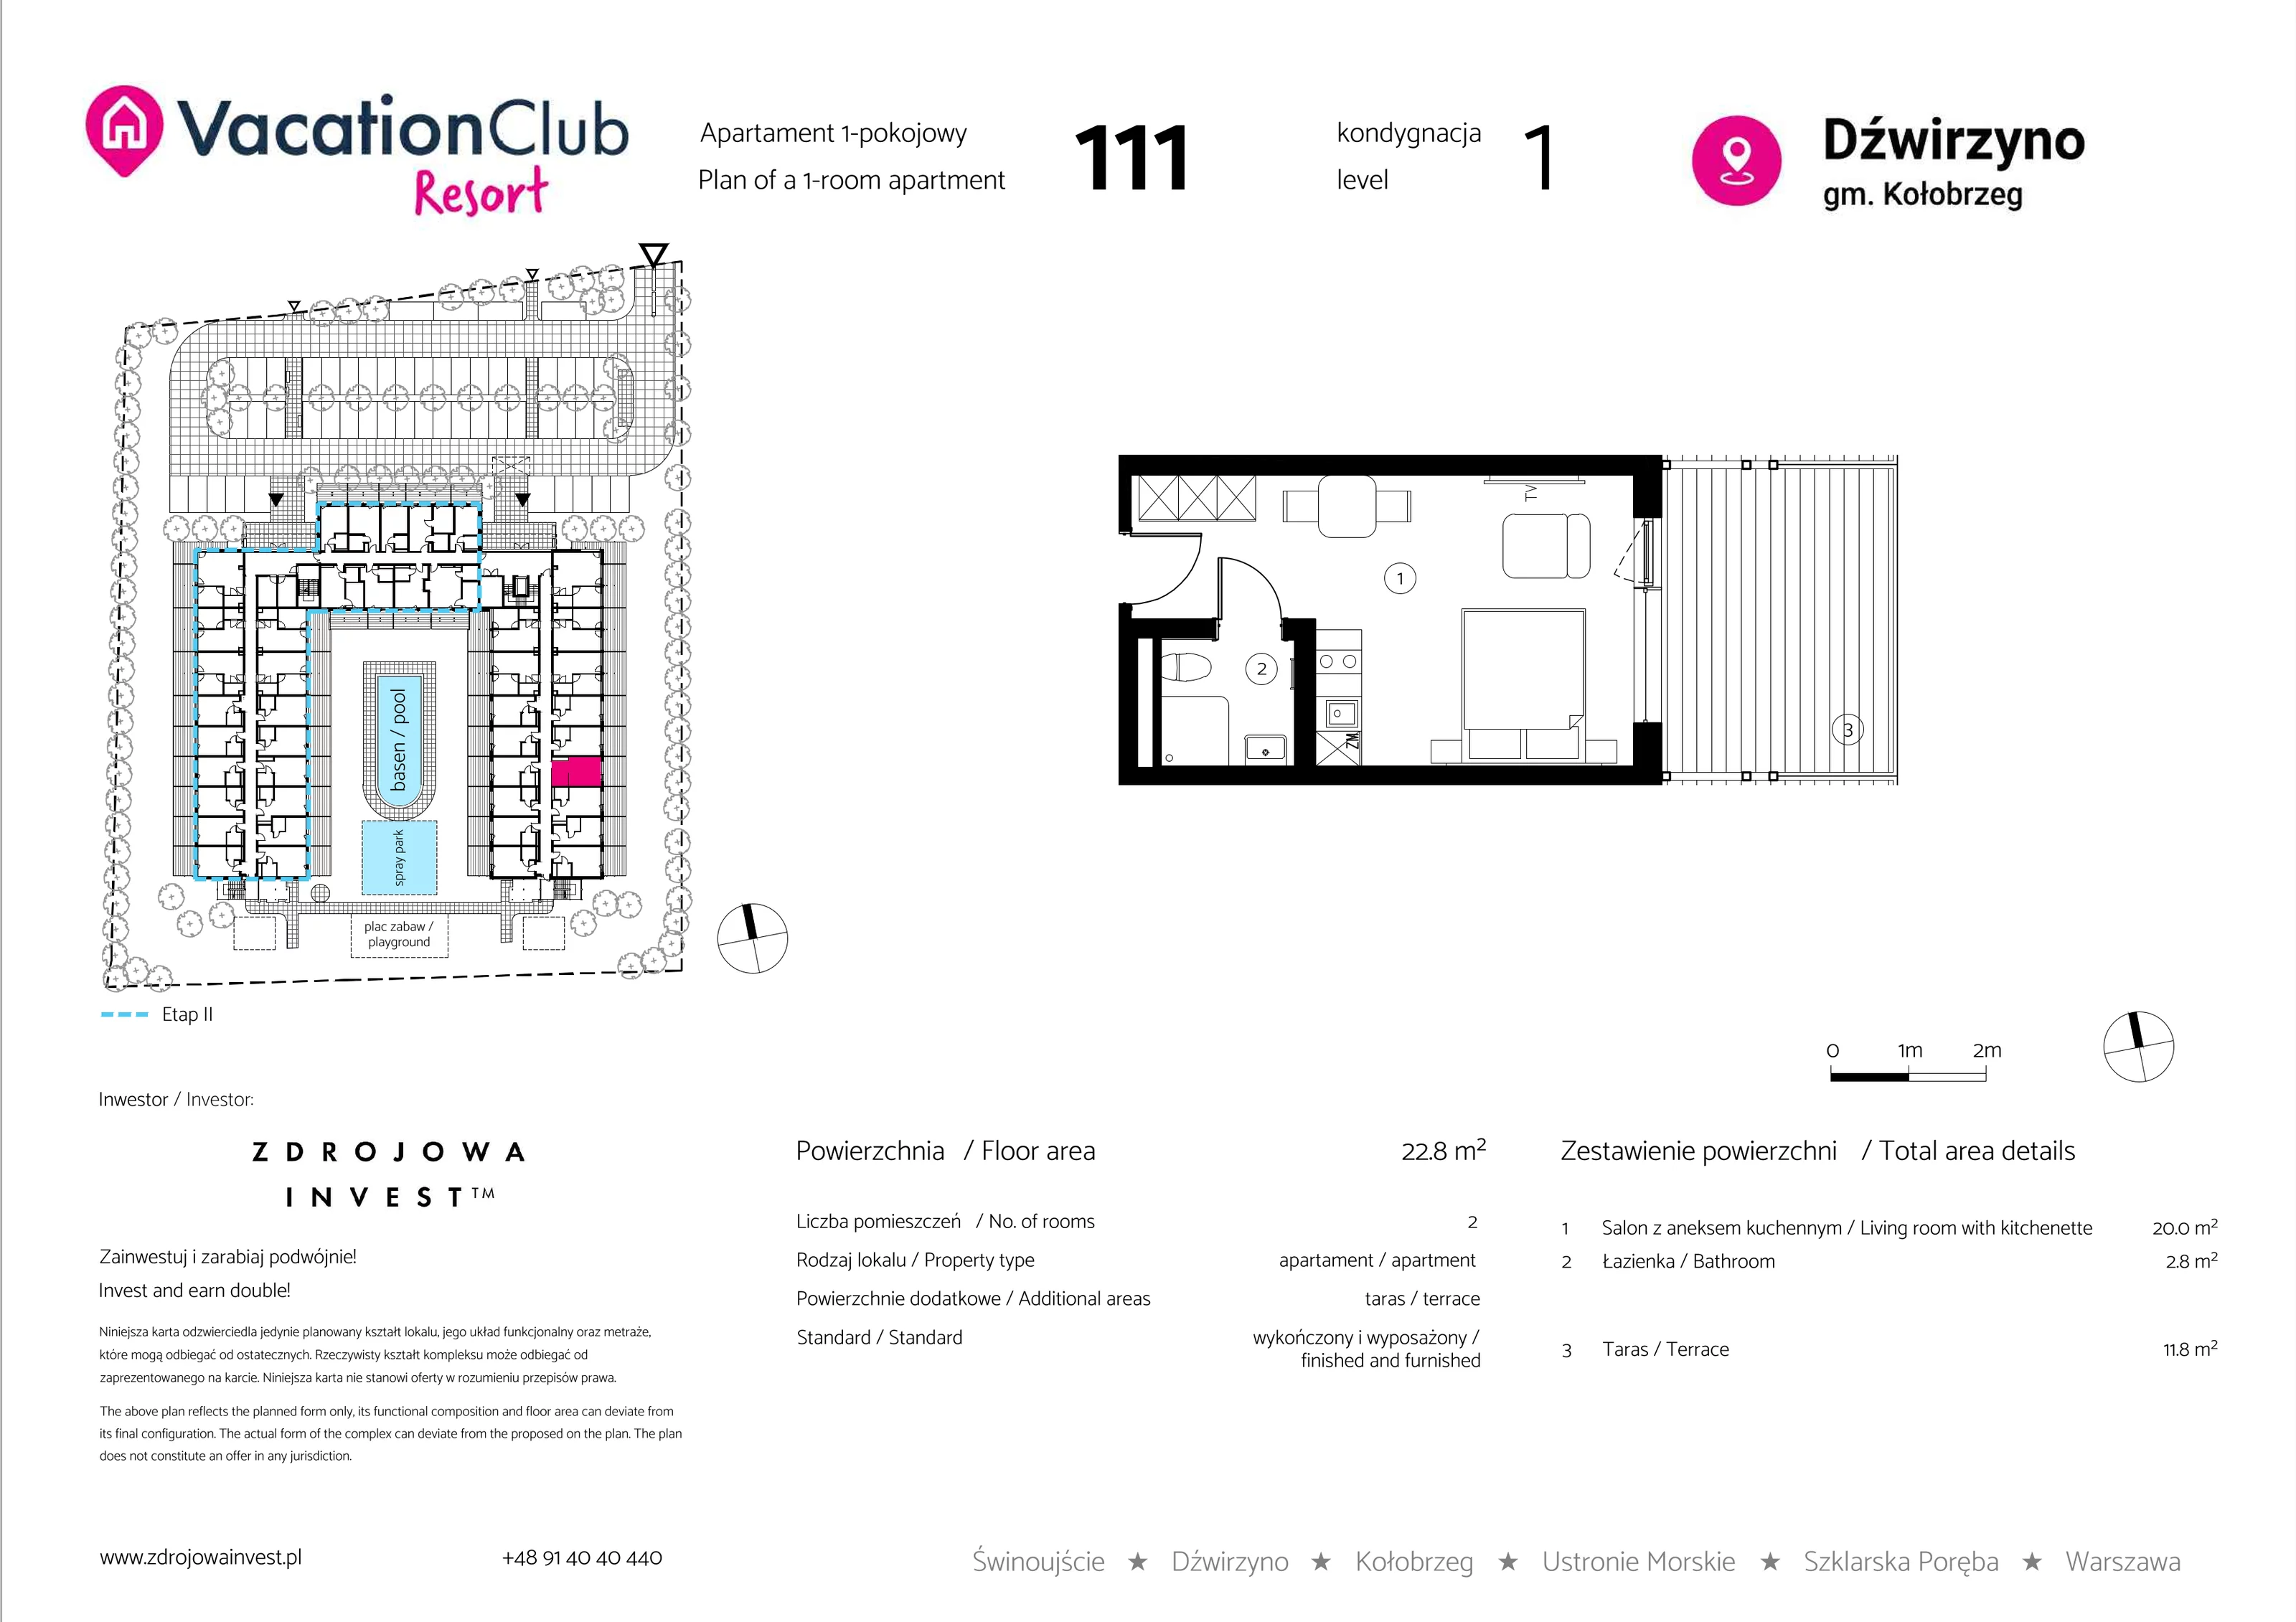 Apartament 22,80 m², parter, oferta nr 111, Vacation Club Resort - apartamenty wakacyjne, Dźwirzyno, ul. Wczasowa 8